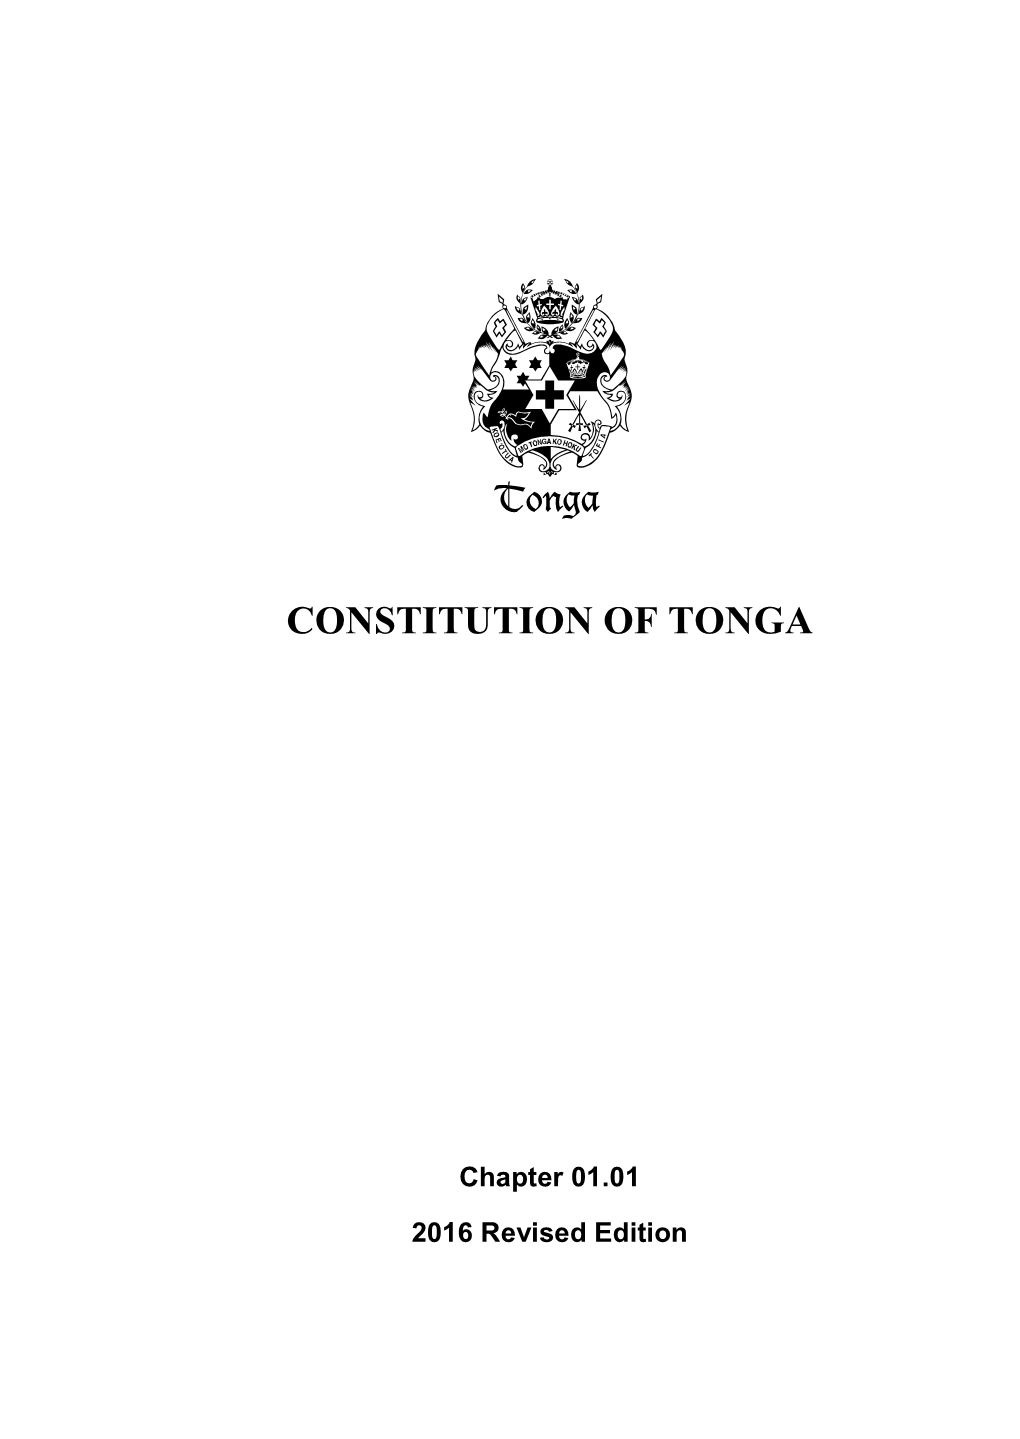 Constitution of Tonga